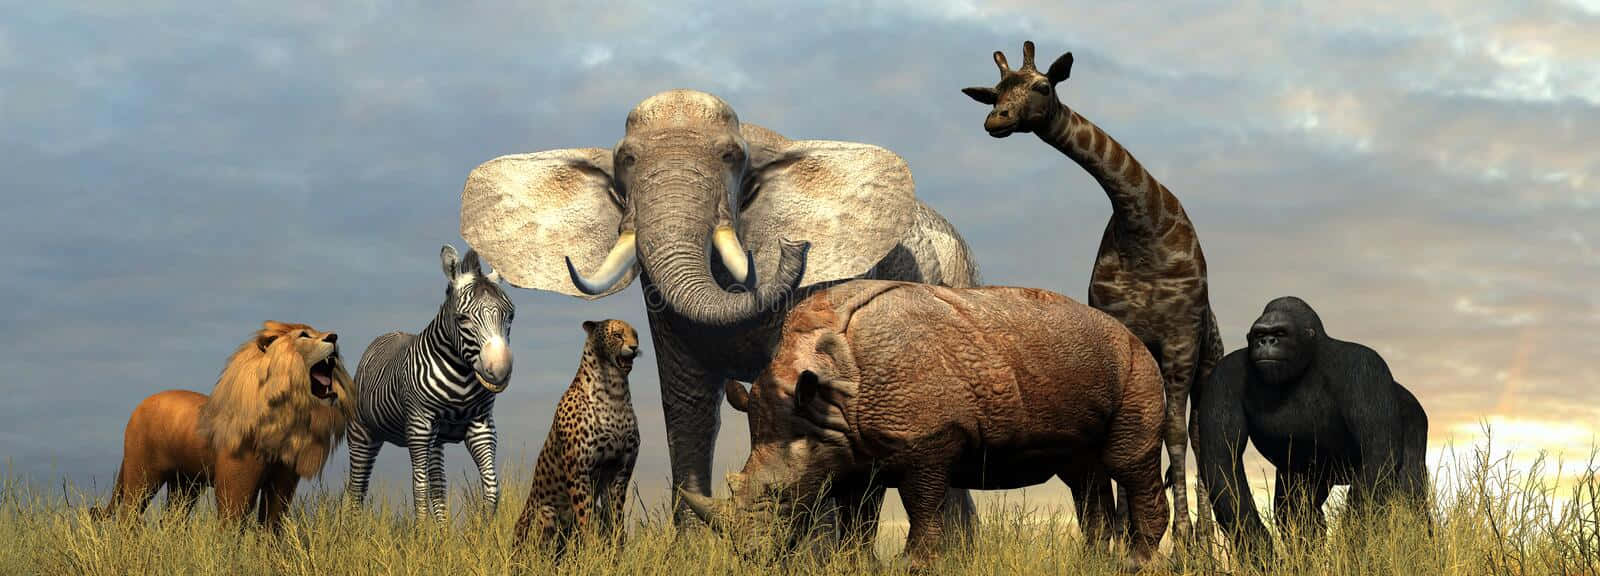 Enelefant Og En Okapi Nyder Et Fredeligt Øjeblik I Den Afrikanske Vildmark.